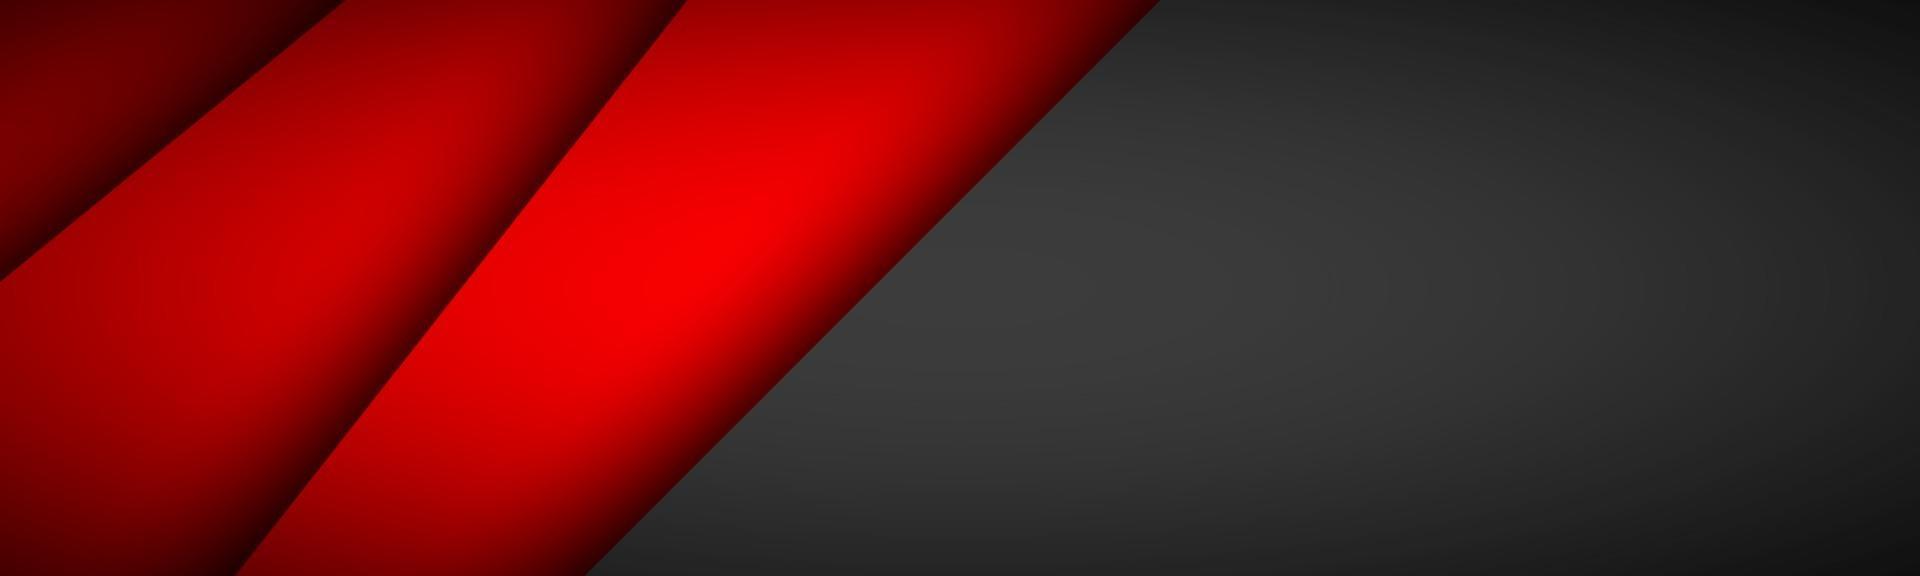 en-tête de couches de papier de chevauchement rouge avec un espace vide noir pour votre texte bannière de conception de matériel moderne illustration vectorielle arrière-plan du modèle d'entreprise vecteur